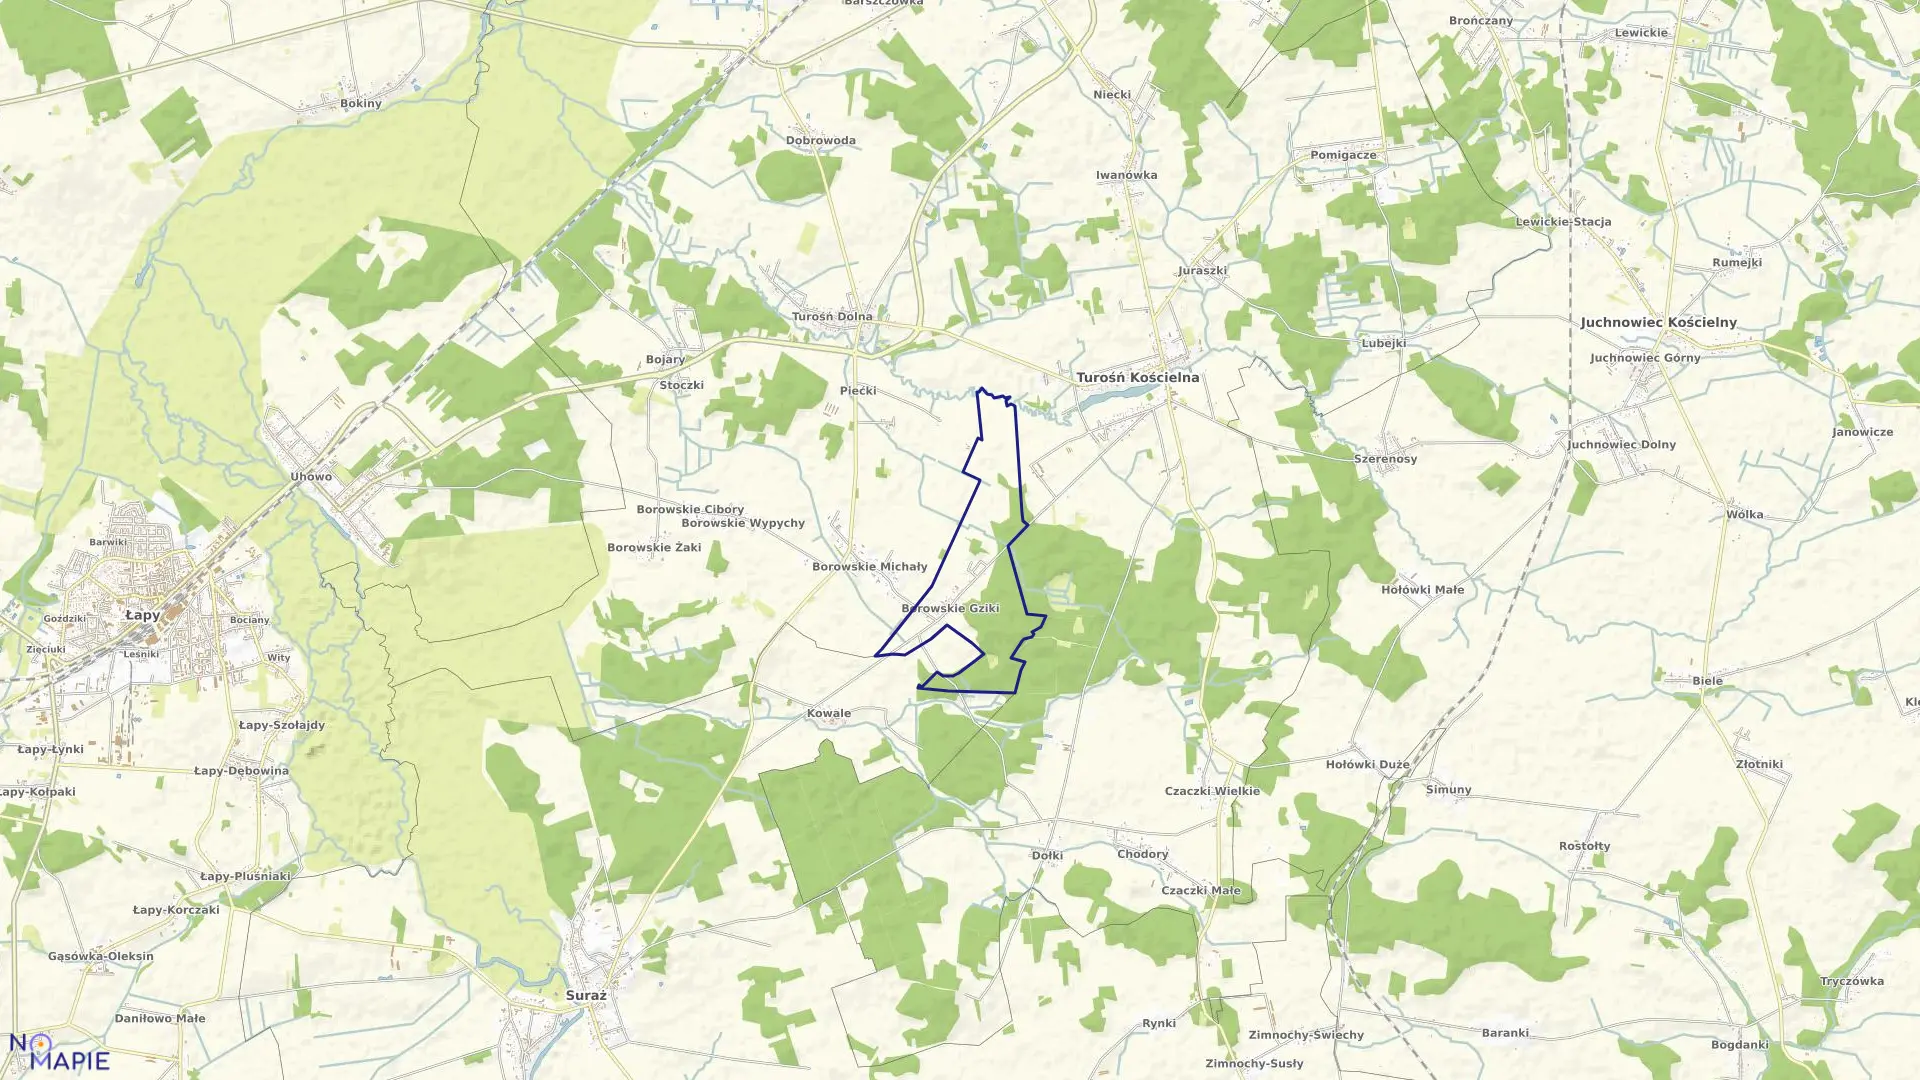 Mapa obrębu BOROWSKIE GZIKI w gminie Turośń Kościelna